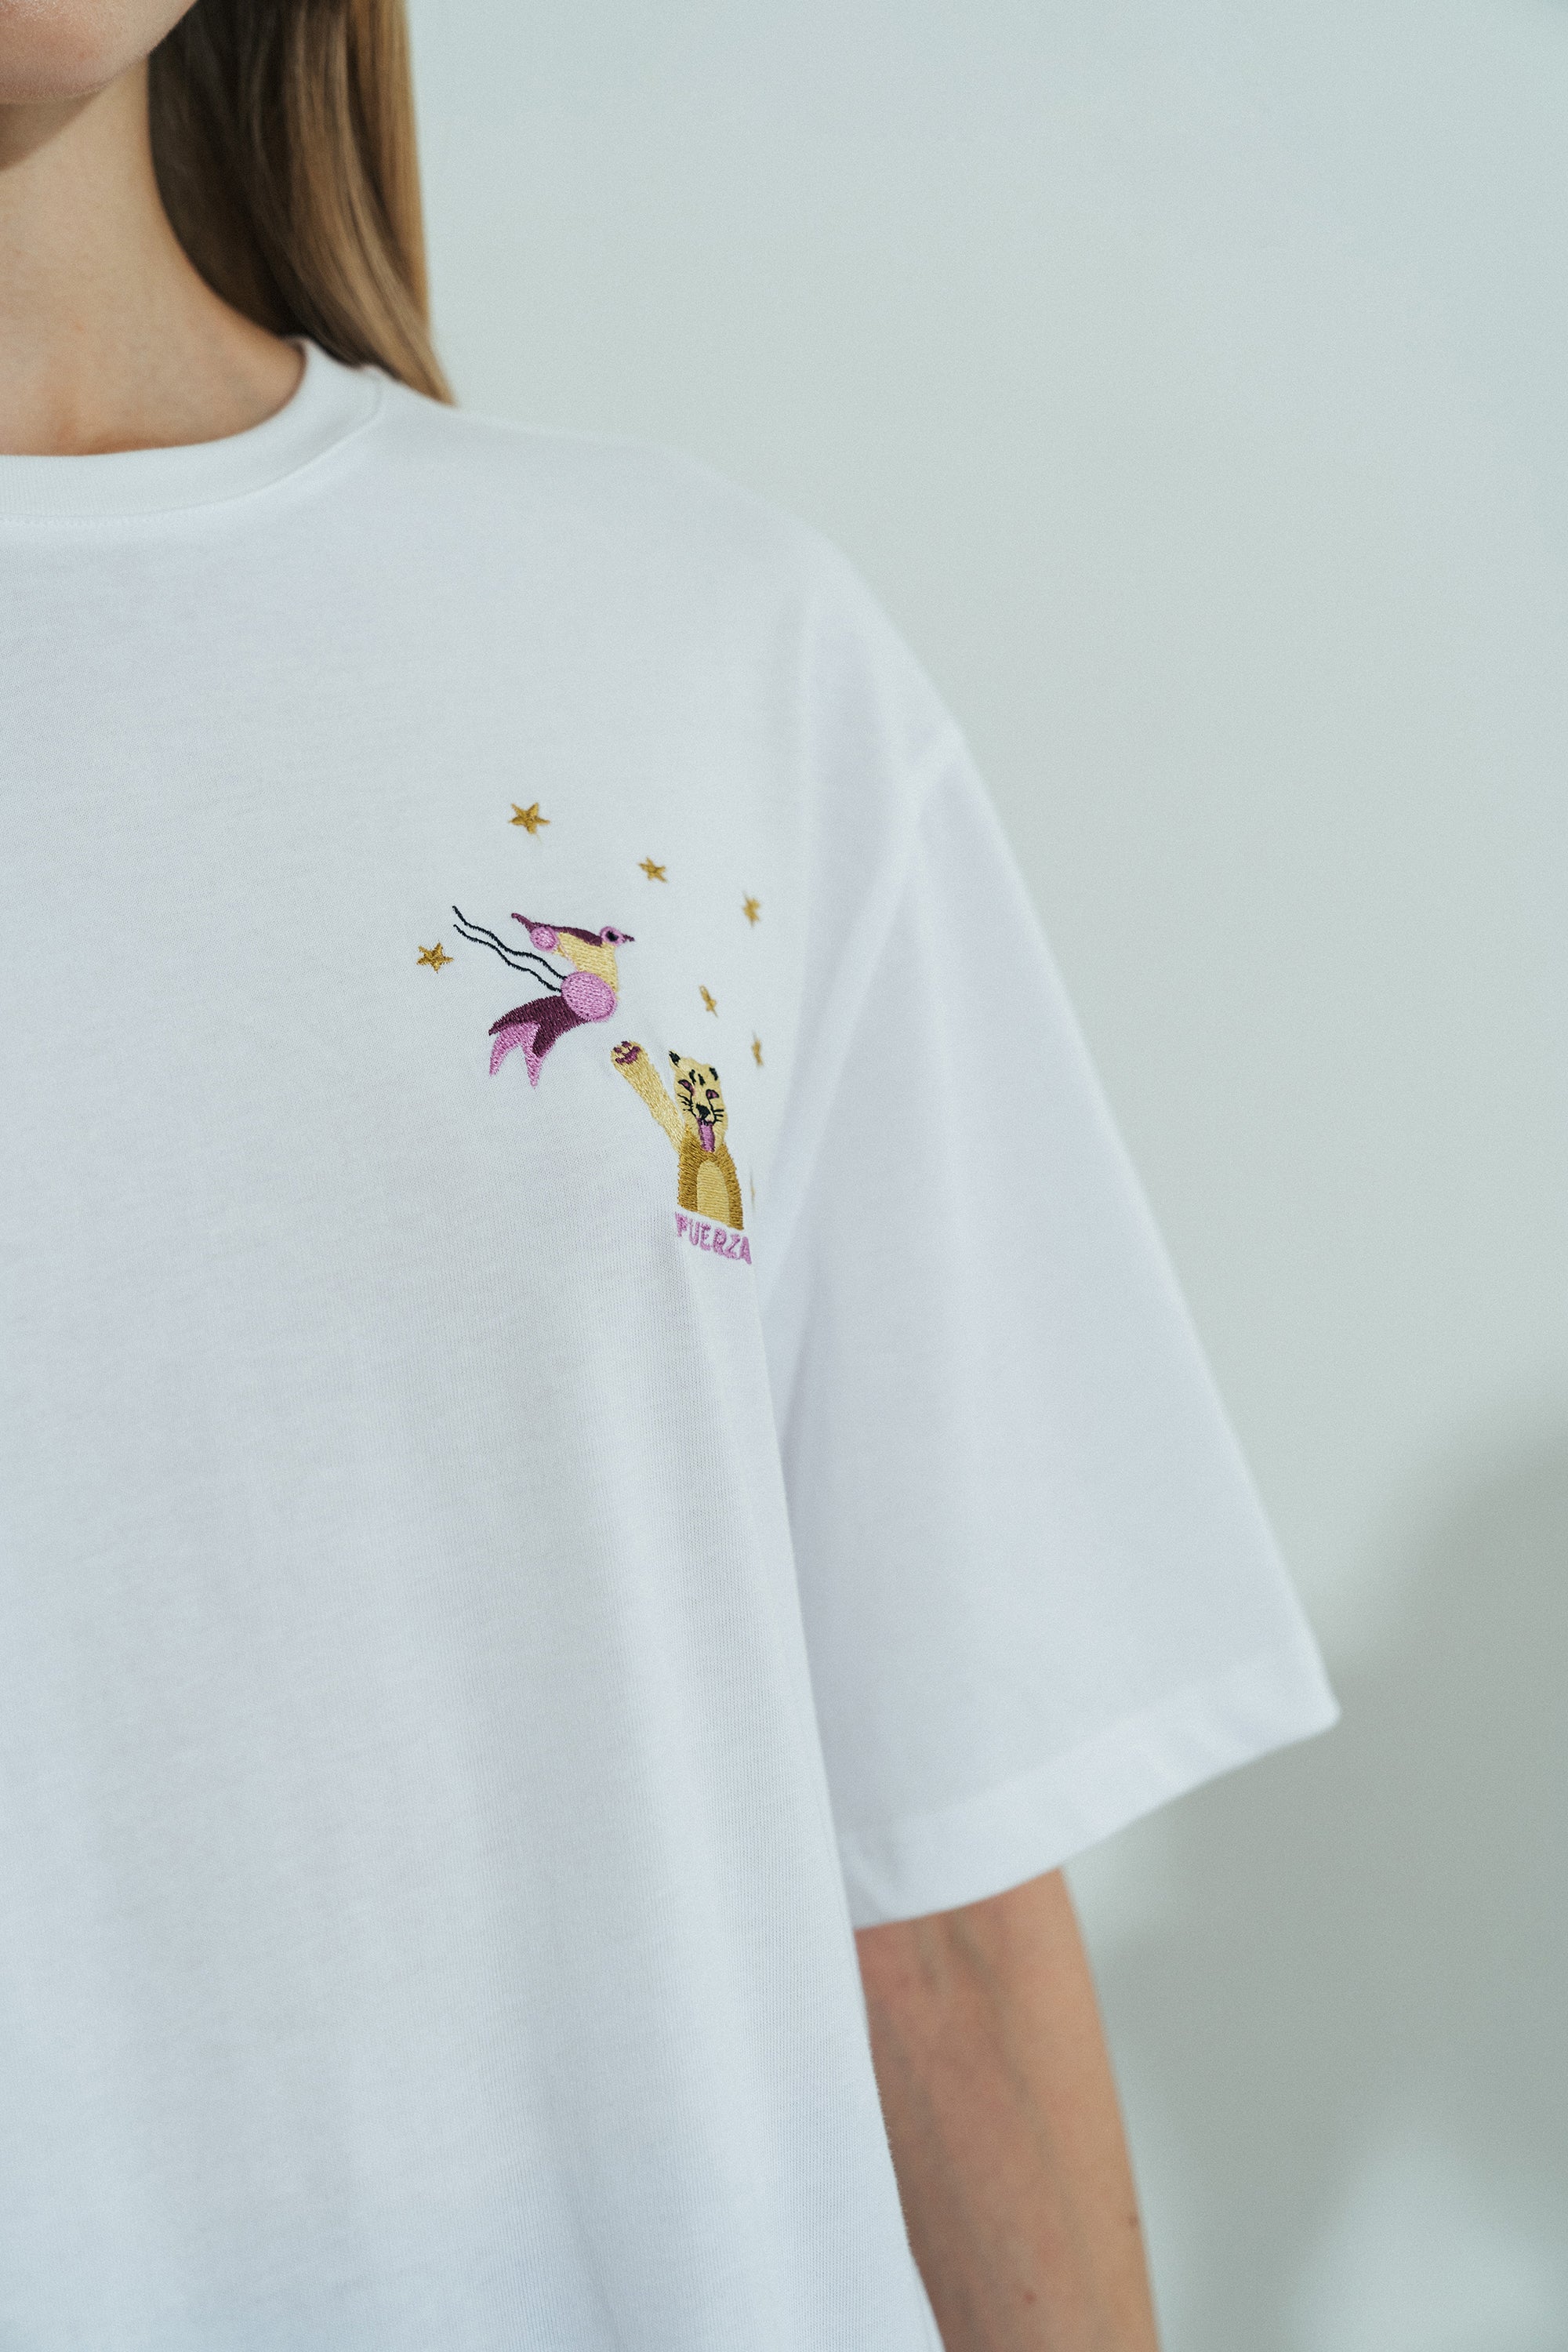 Shantall Lacayo x Lost Pattern Embroidery T-shirt - LOST PATTERN Shirt